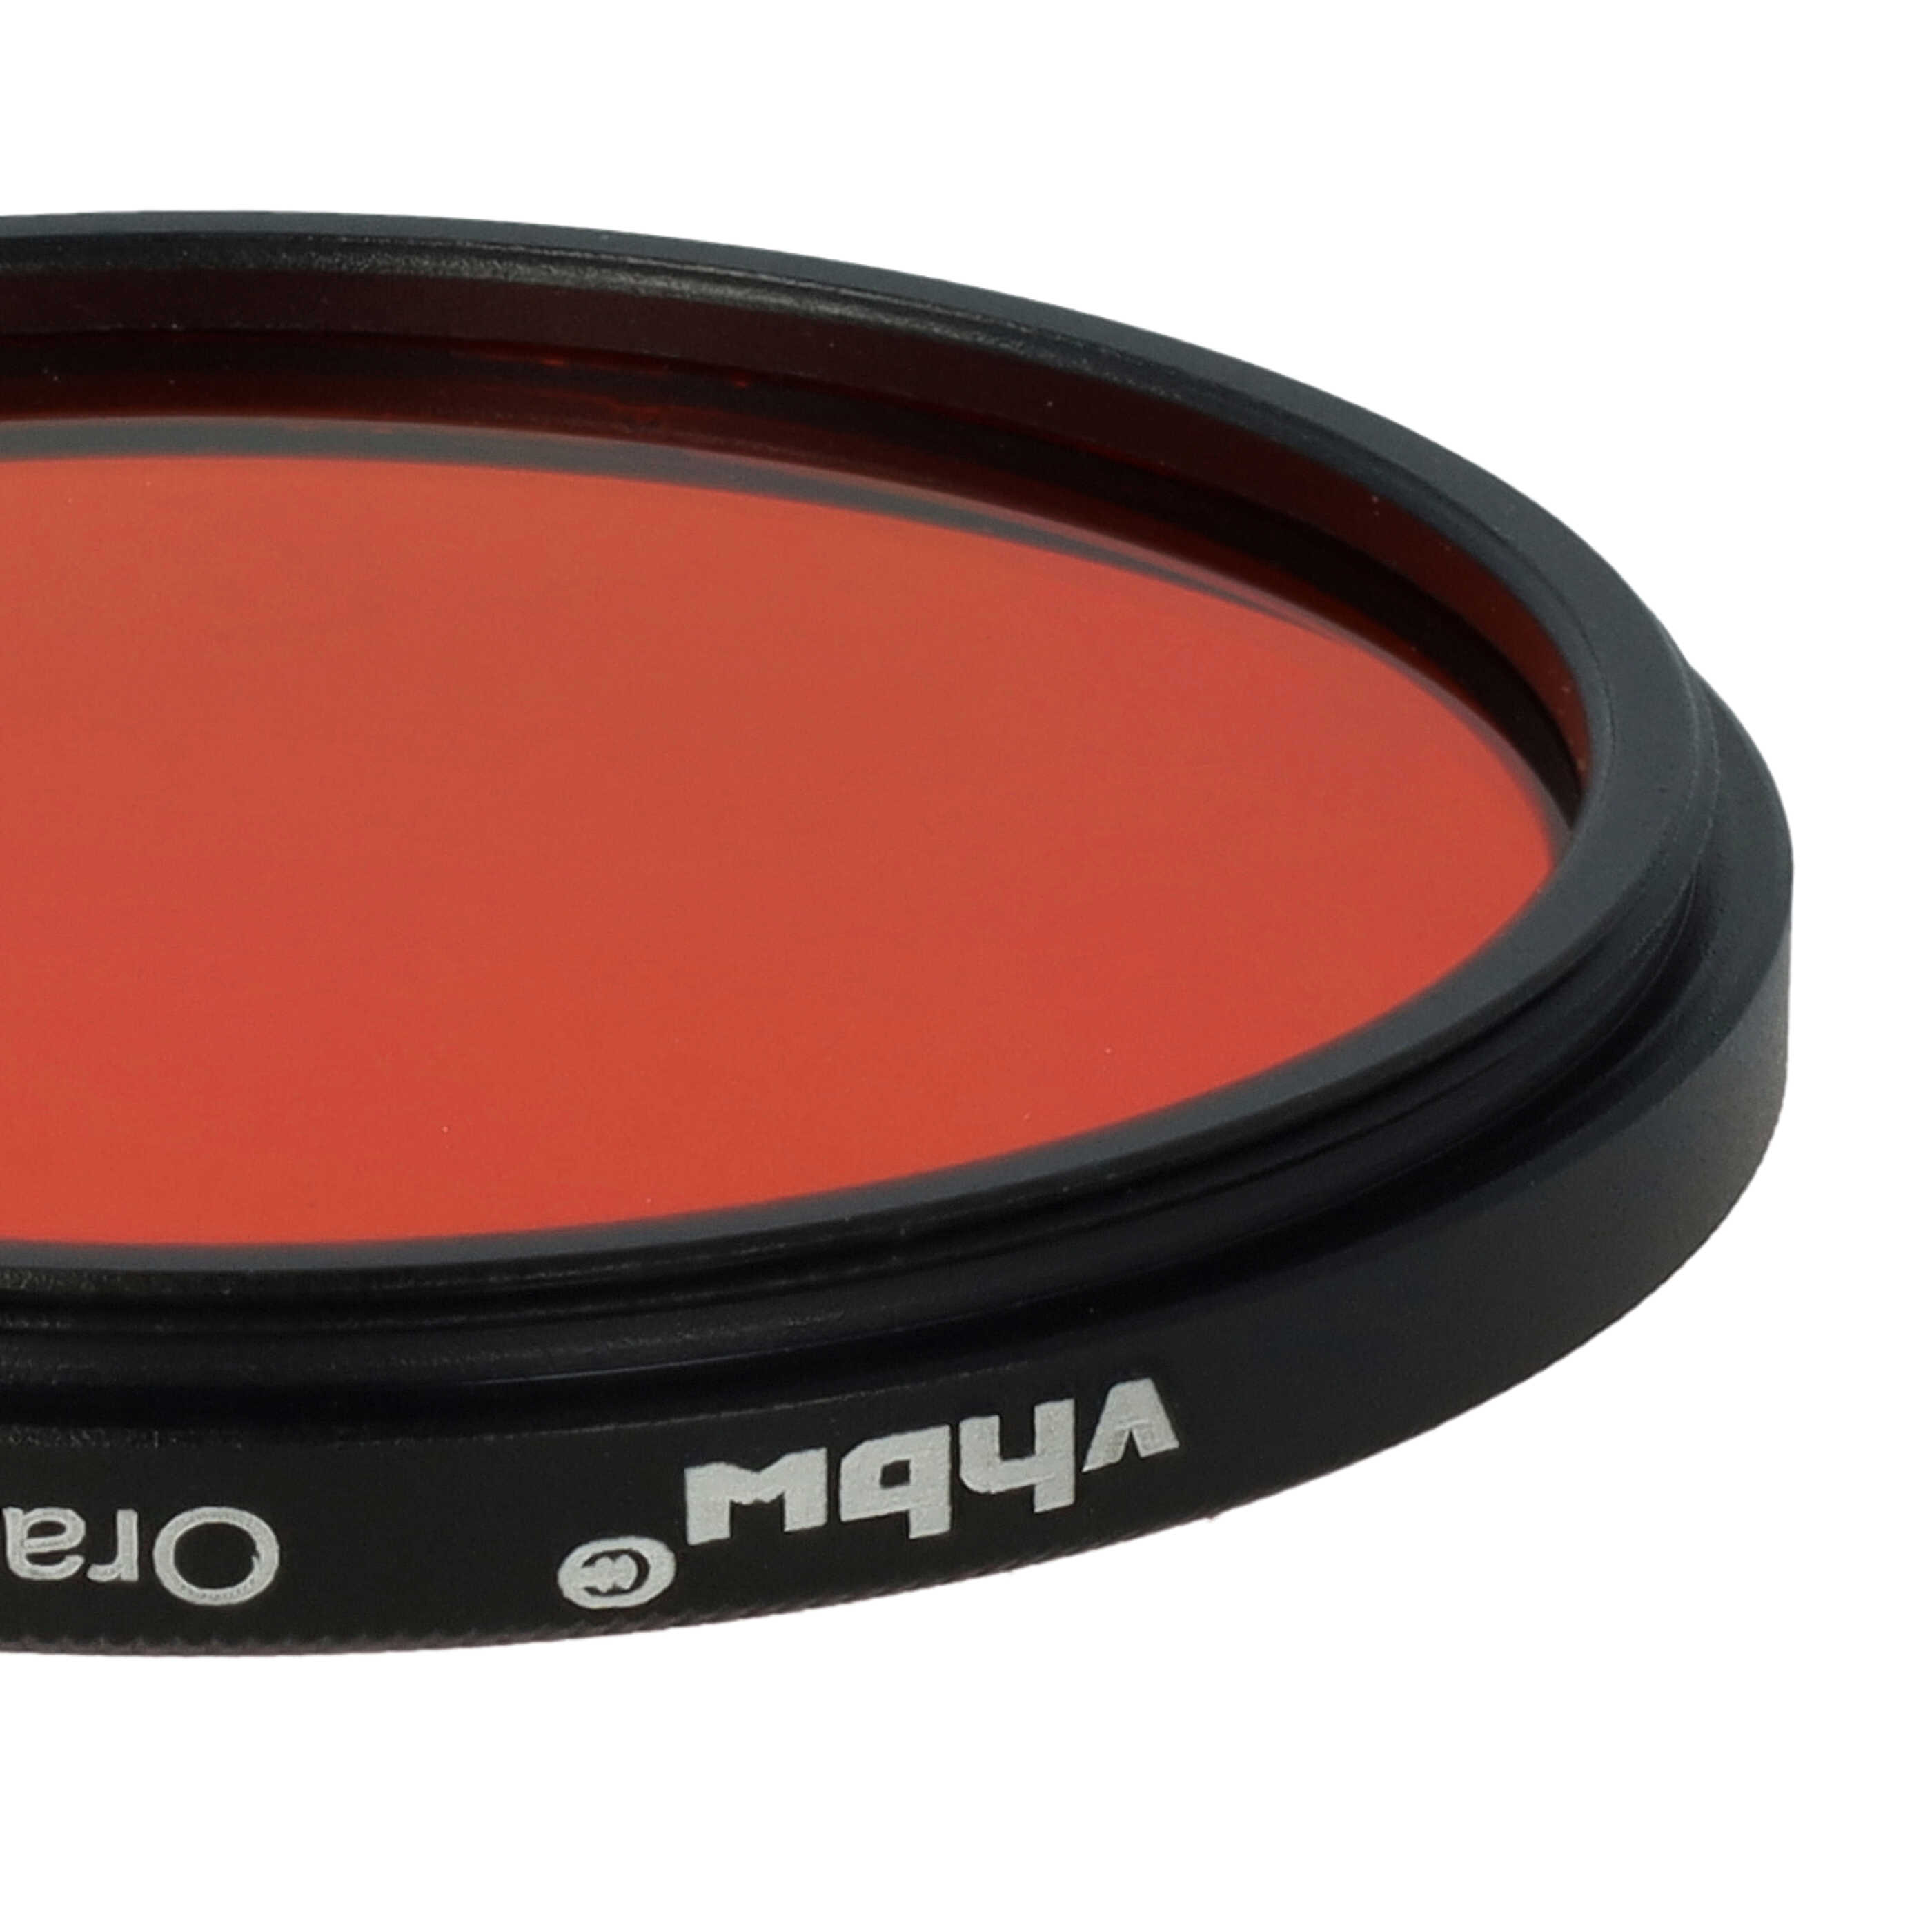 Filtro de color para objetivo de cámara con rosca de filtro de 52 mm - Filtro naranja